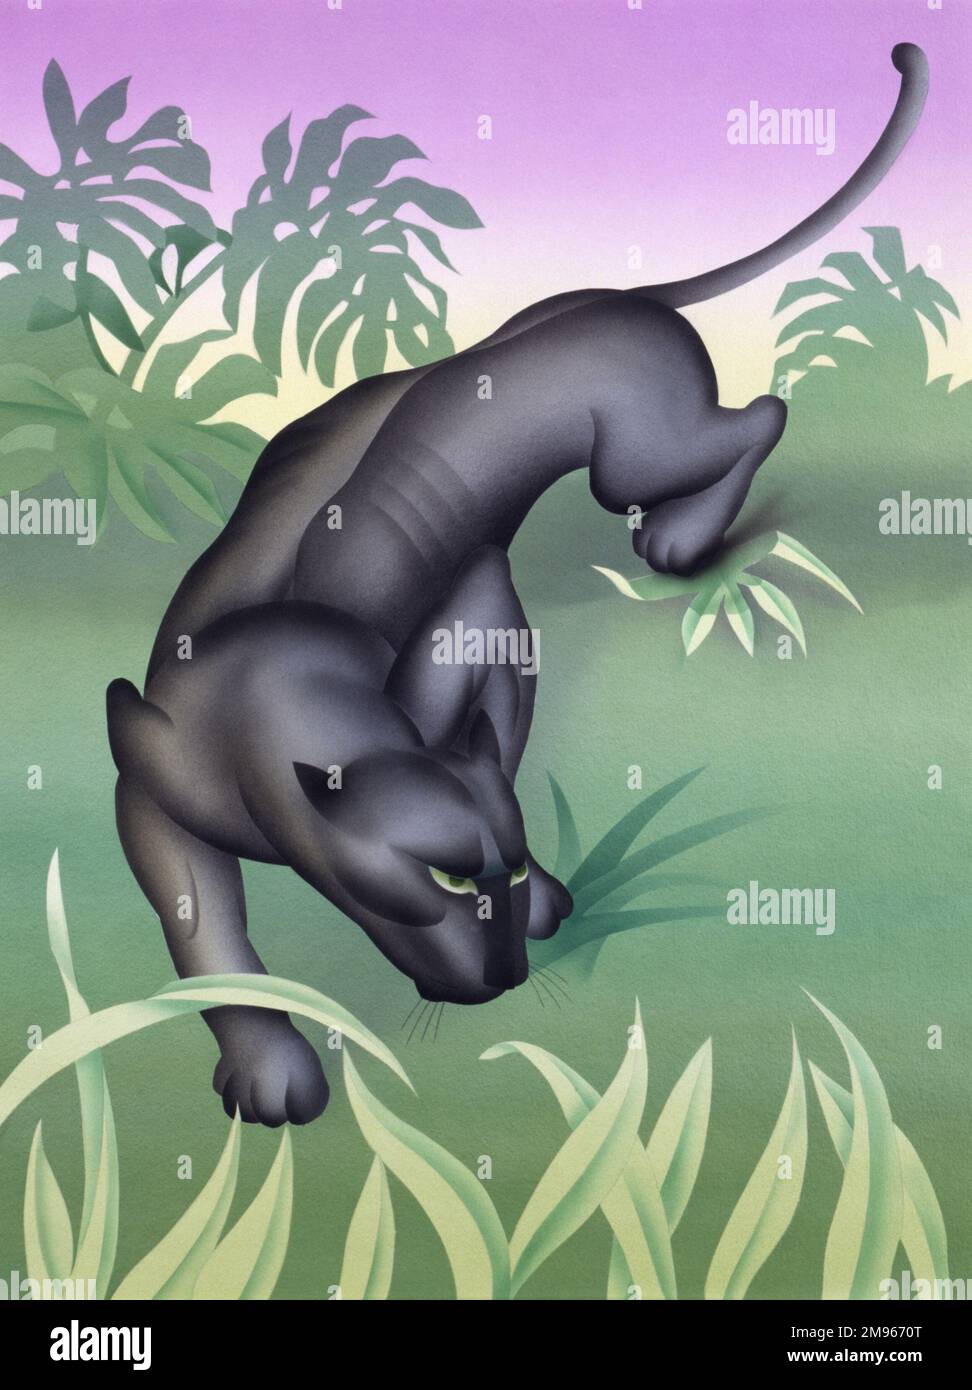 Ein hoch gestyltes Airbrush-Gemälde von Malcolm Greensmith von einem Black Panther, einem melanistischen jaguar (Panthera onca), auf dem Weg durch einen launisch beleuchteten Dschungel. Stockfoto